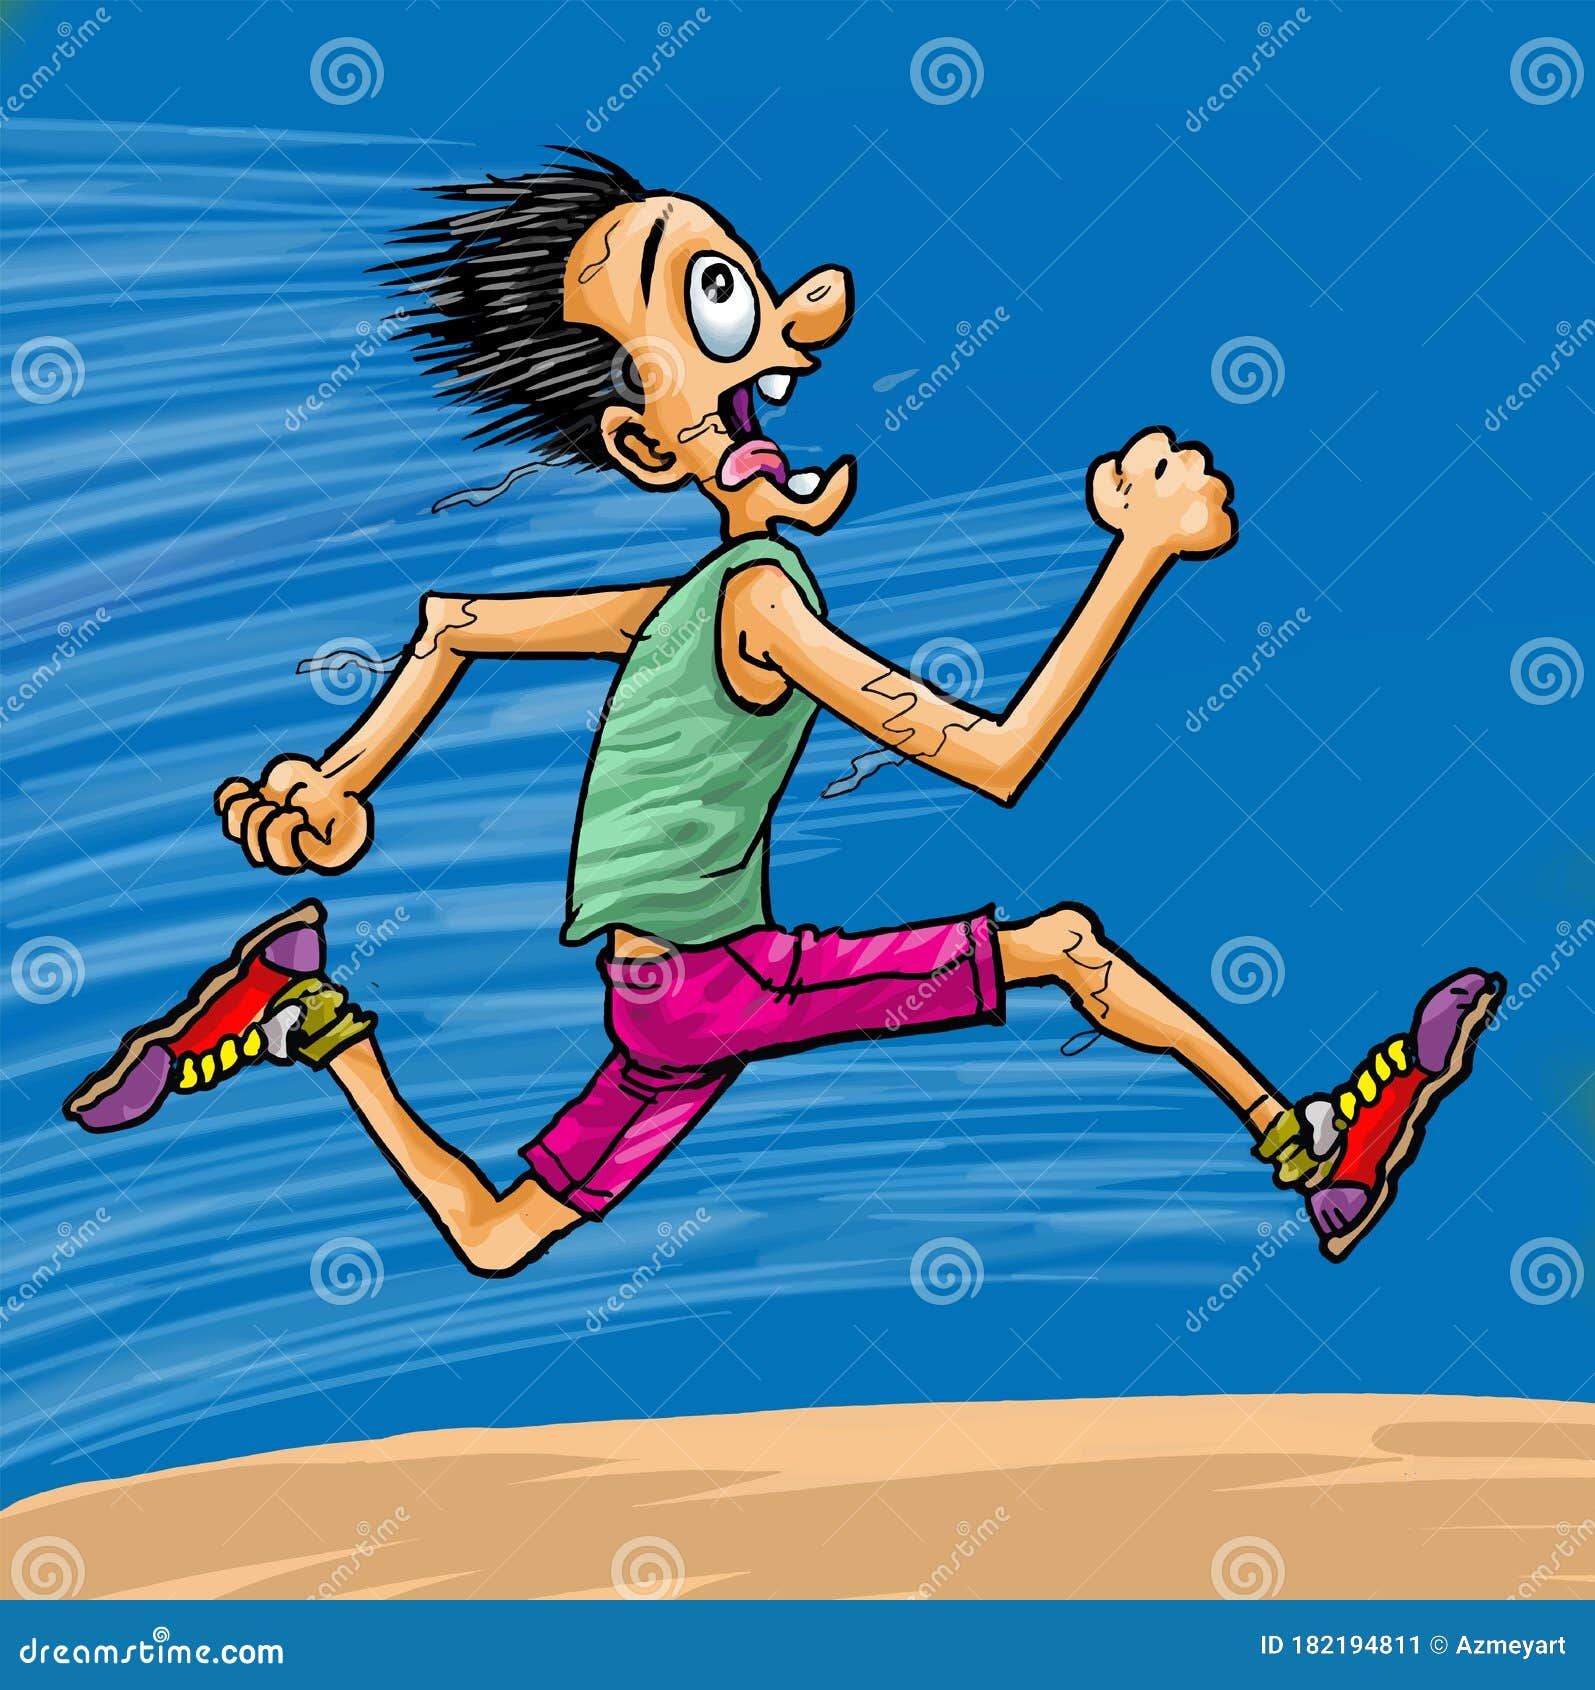 Cartoon the Man Running Fast Stock Vector - Illustration of athletic,  cartoon: 182194811